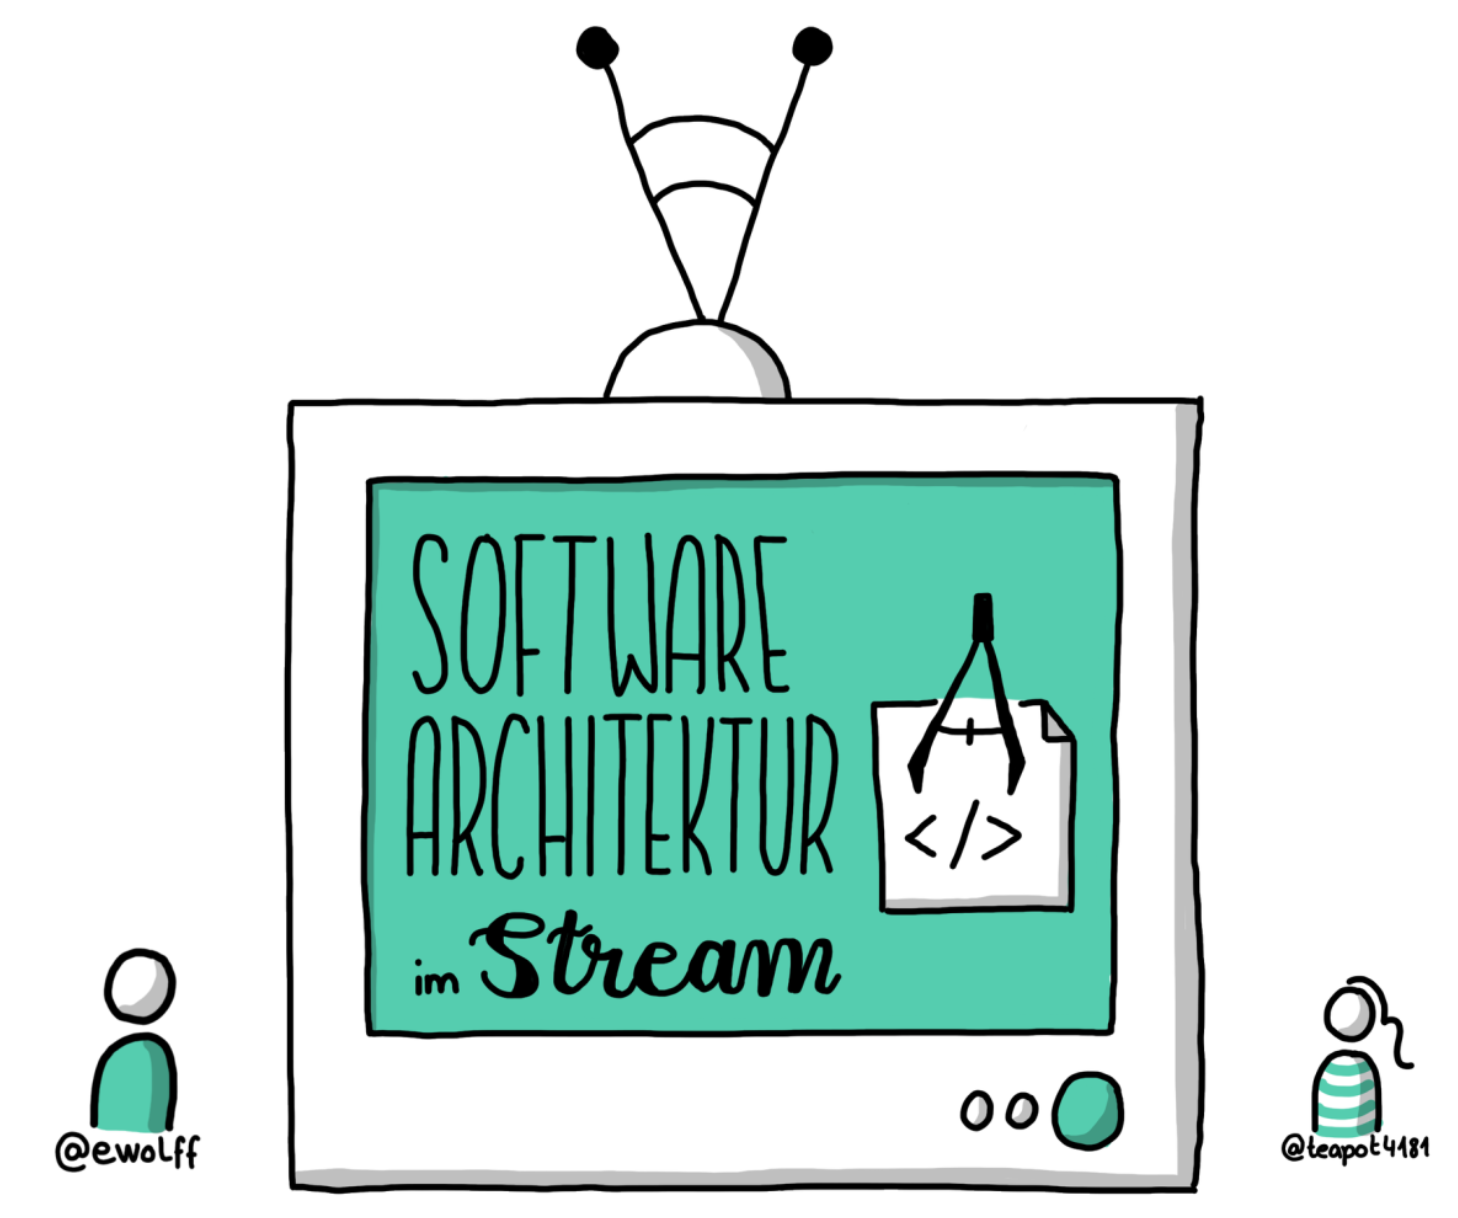 Software Architektur im Stream Logo